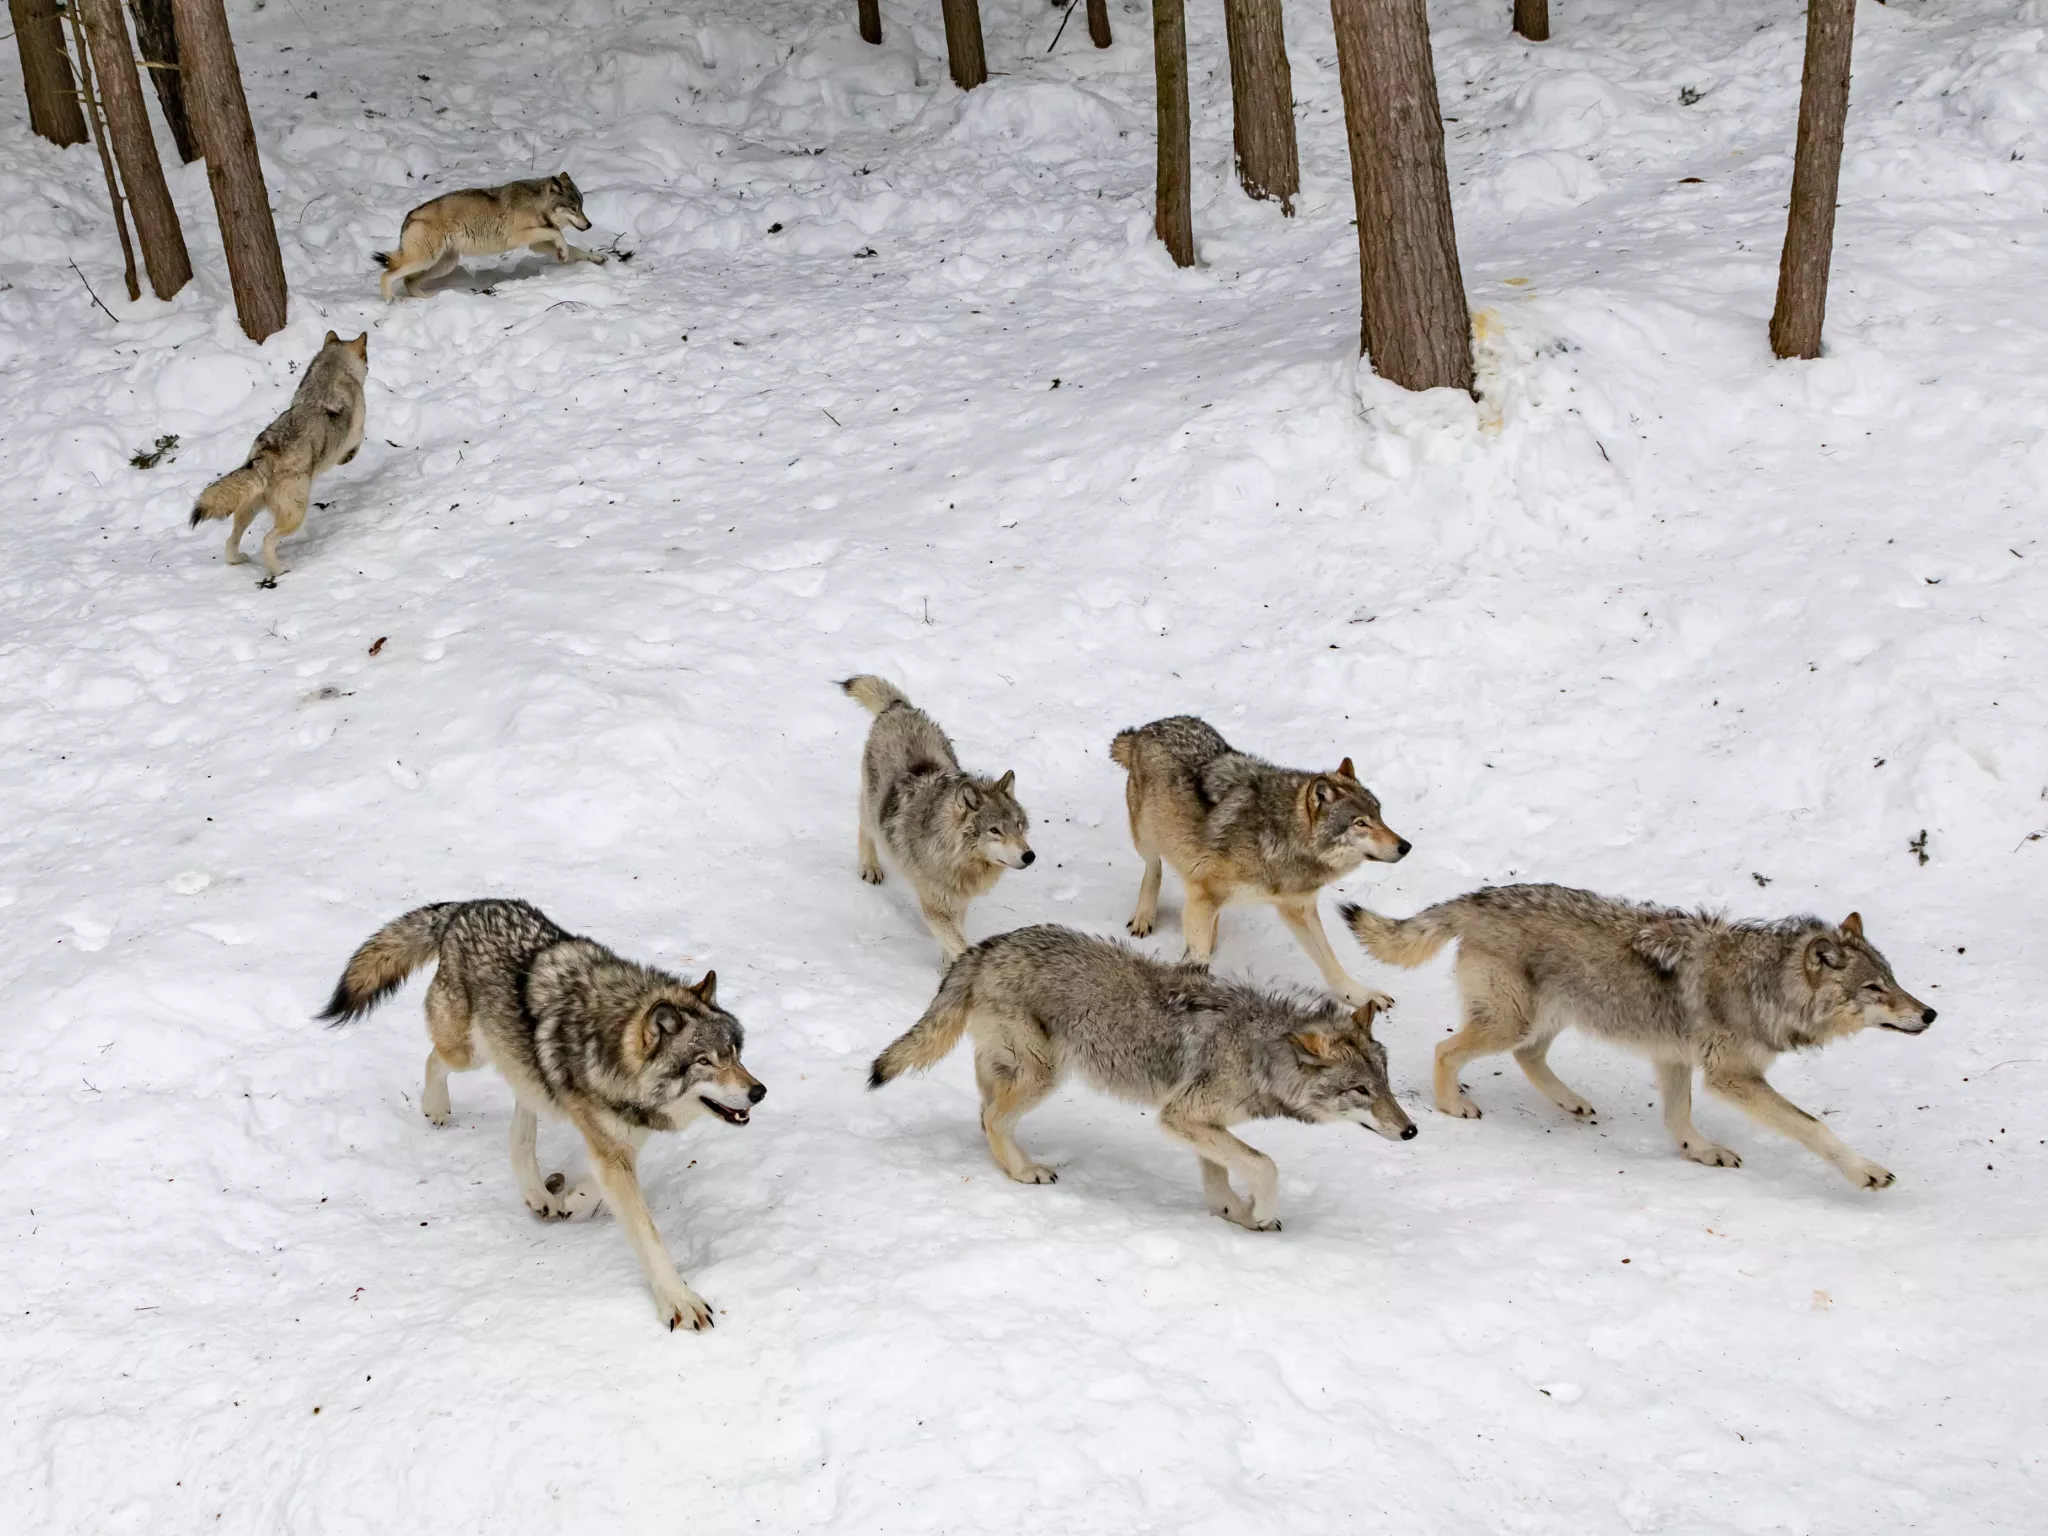 Déclassement du statut de protection du loup : Ursula von der Leyen crée un dangereux précédent